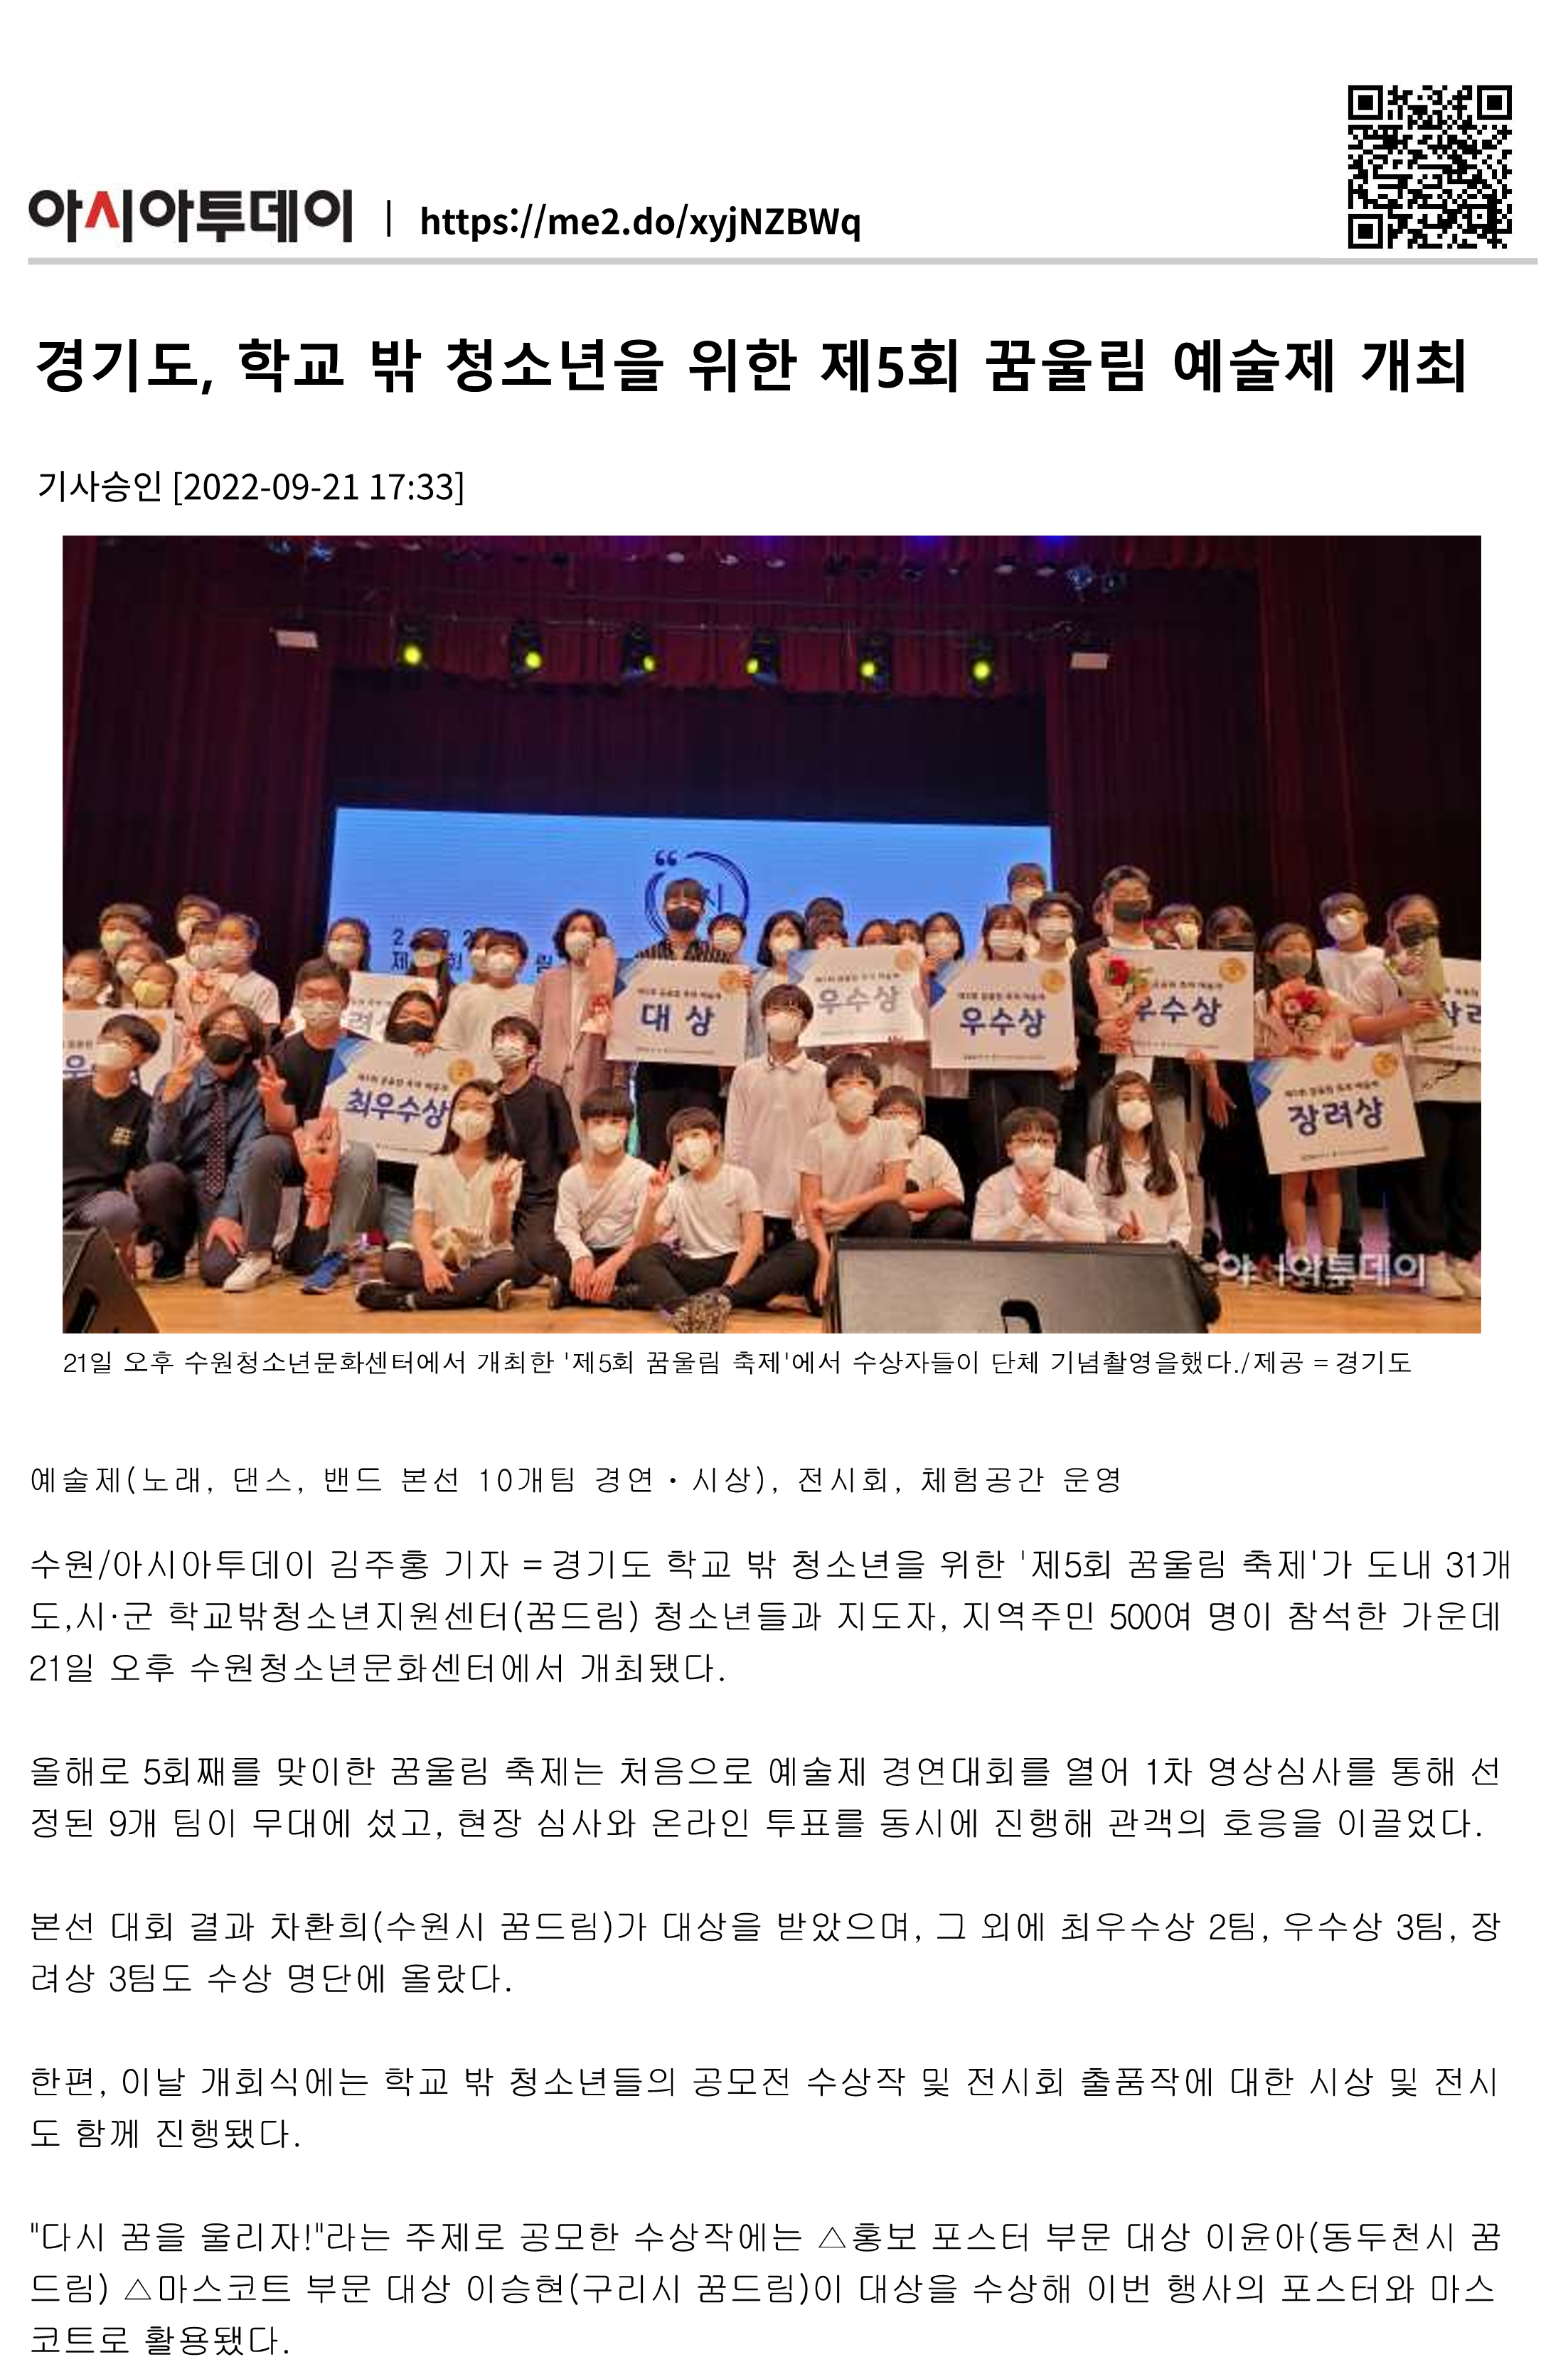 경기도, 학교 밖 청소년을 위한 제5회 꿈울림 예술제 개최 이미지